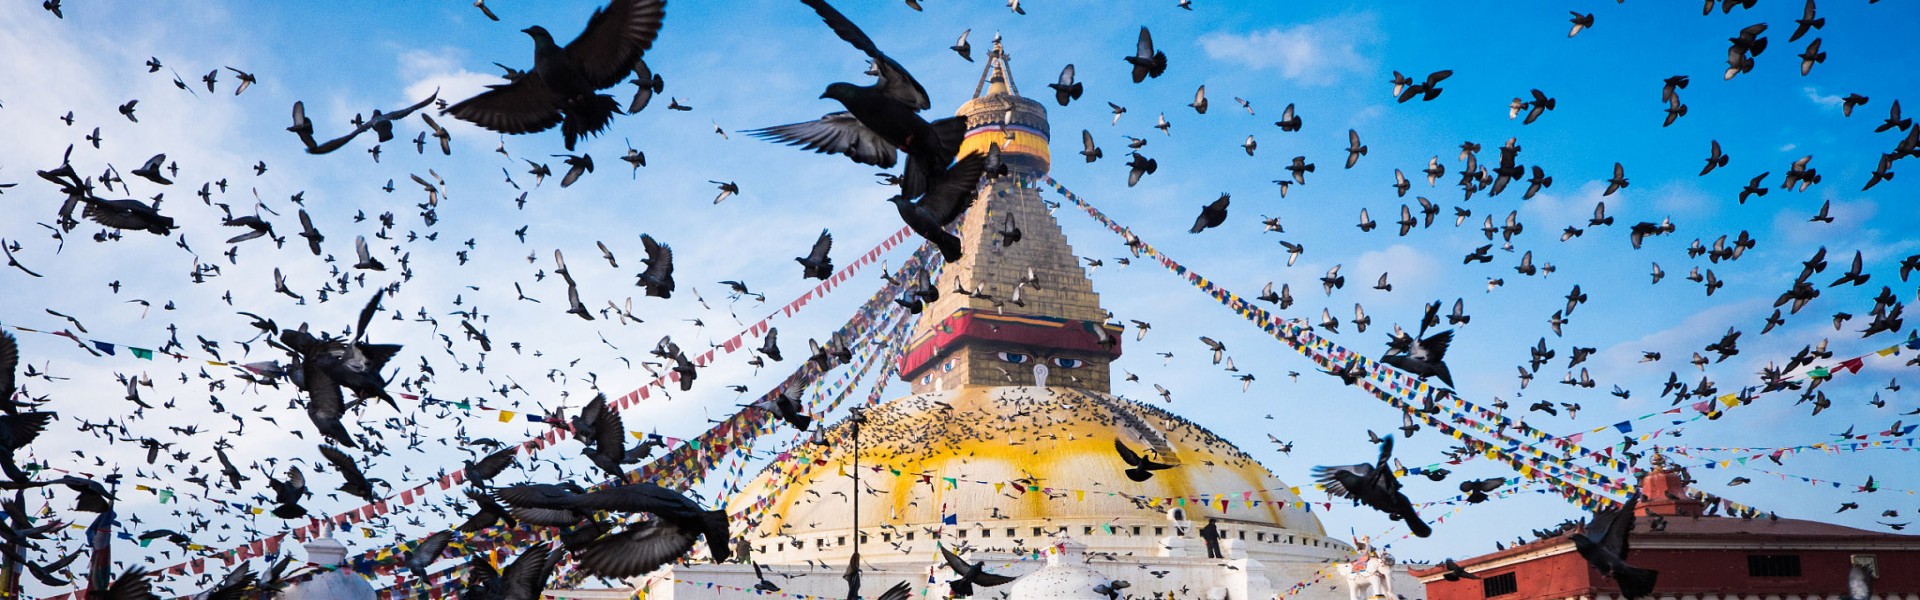 swyambhunath stupa